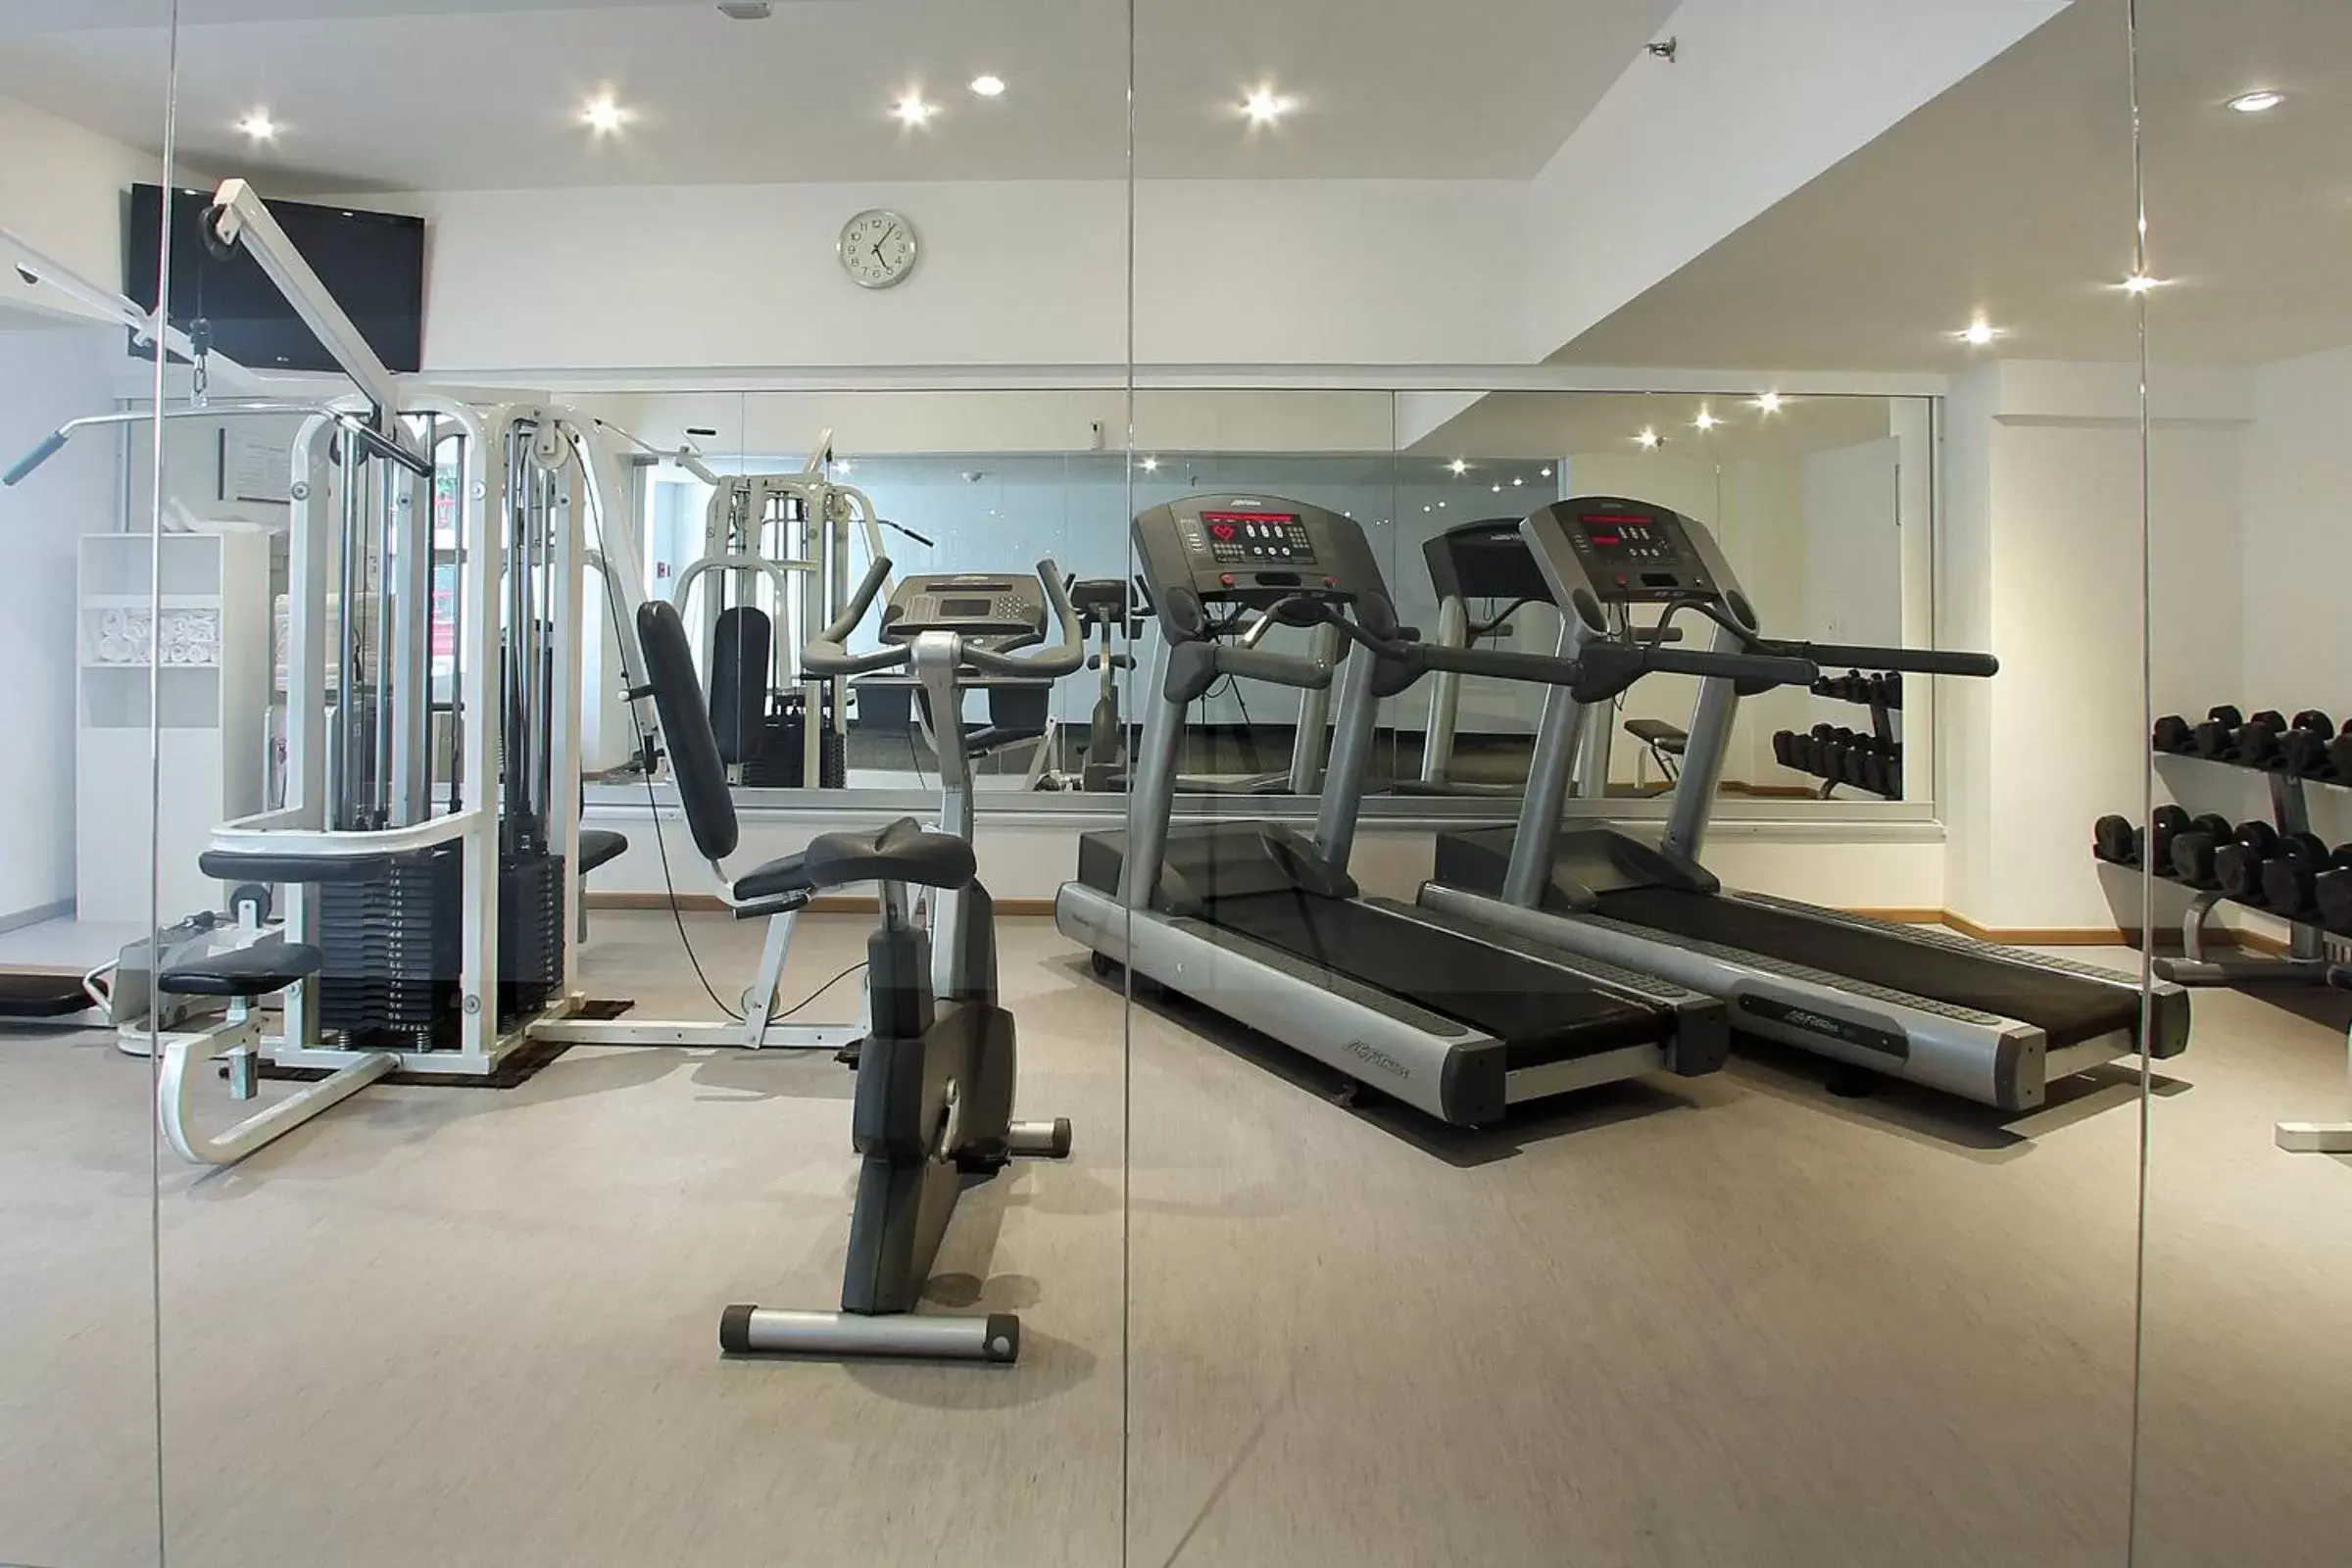 Fitness centre/facilities, Fitness Center/Facilities in Fiesta Inn Tlalnepantla